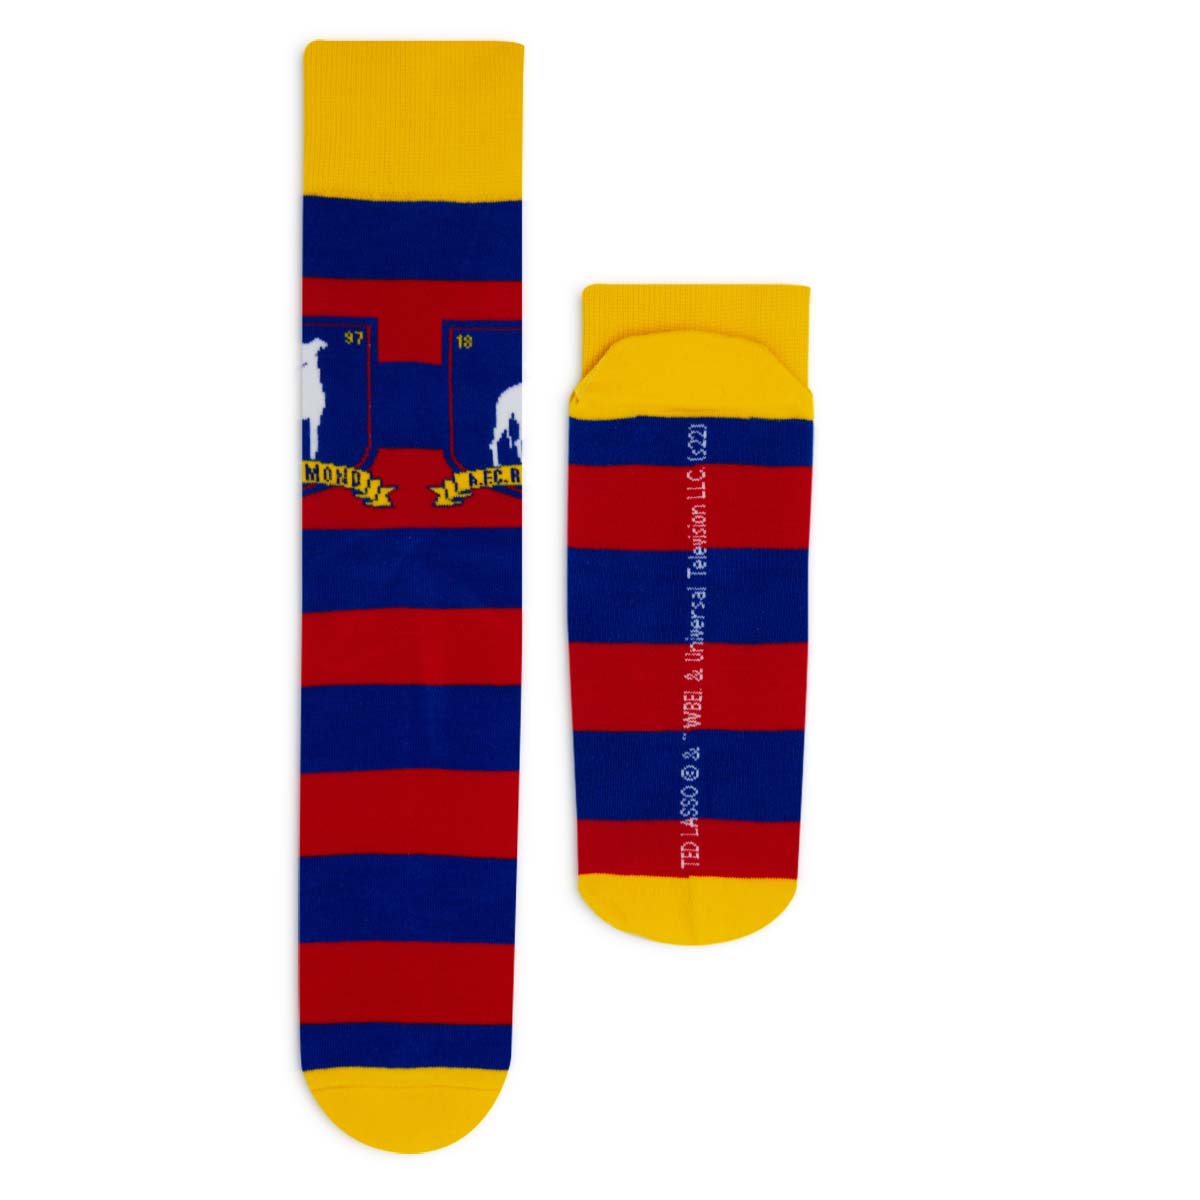 Ted Lasso A.F.C. Richmond Knit Socks